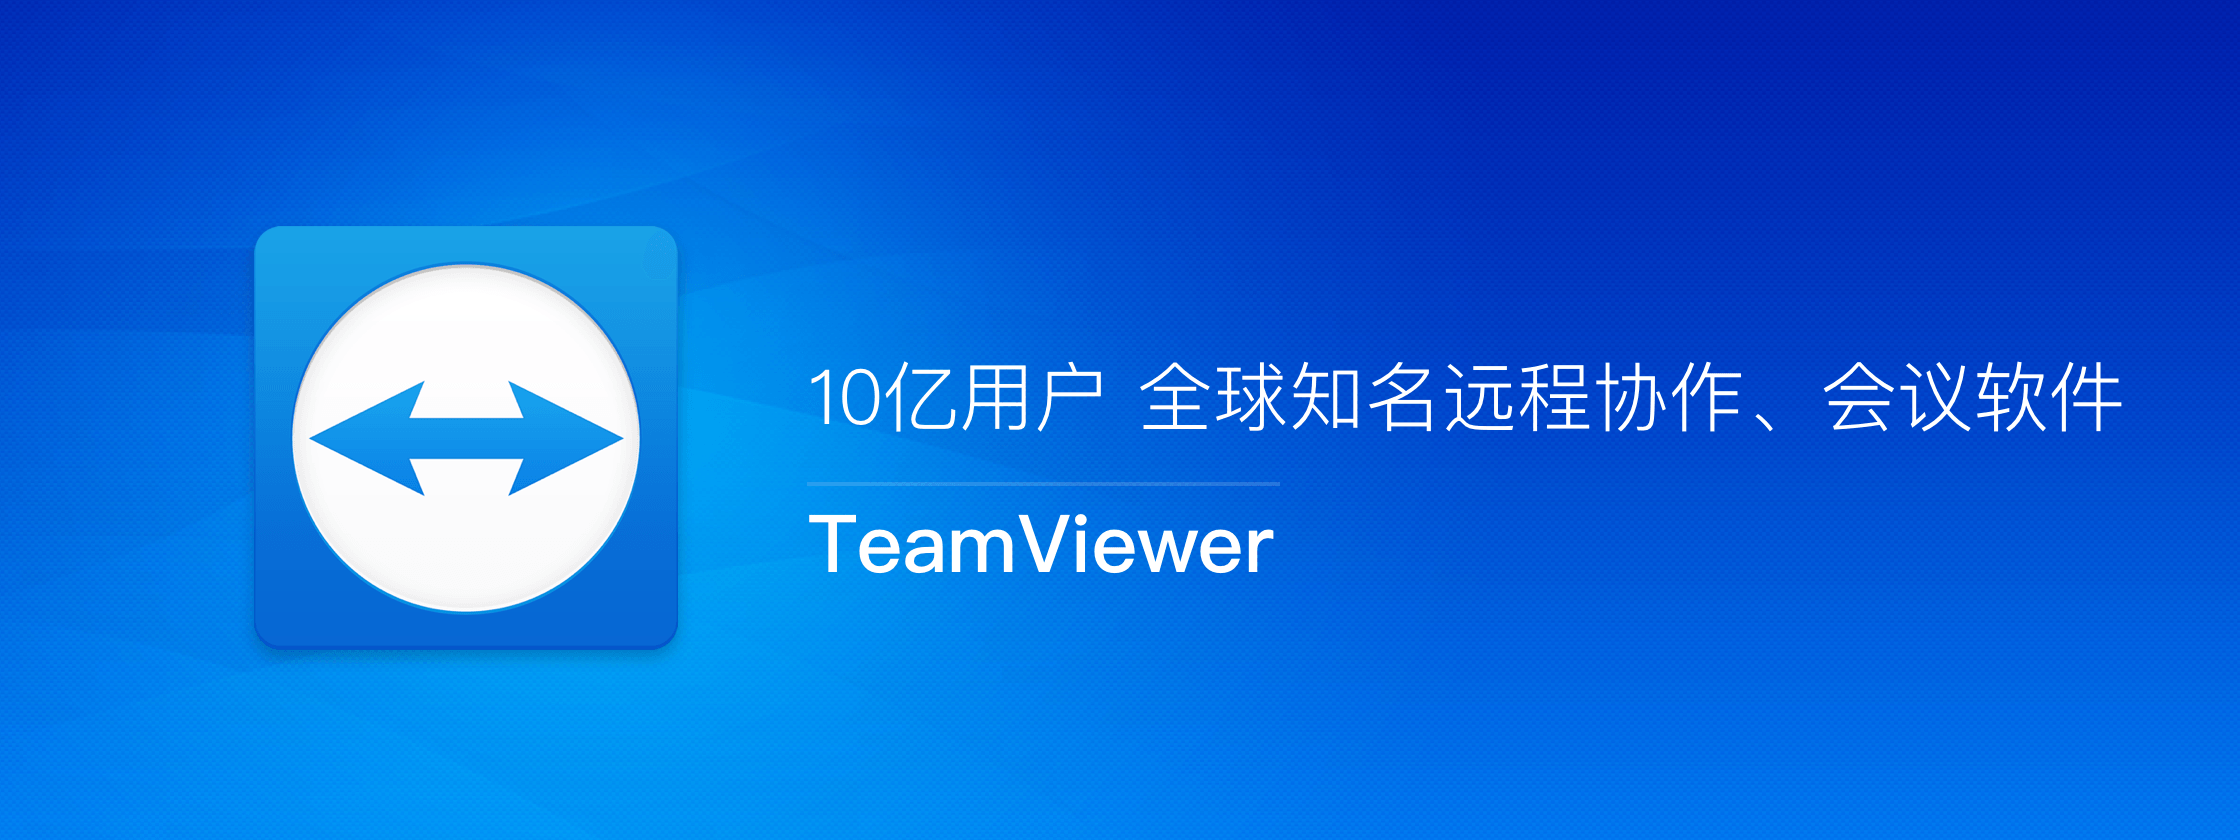 TeamViewer – 10亿用户 全球知名远程协作、会议软件